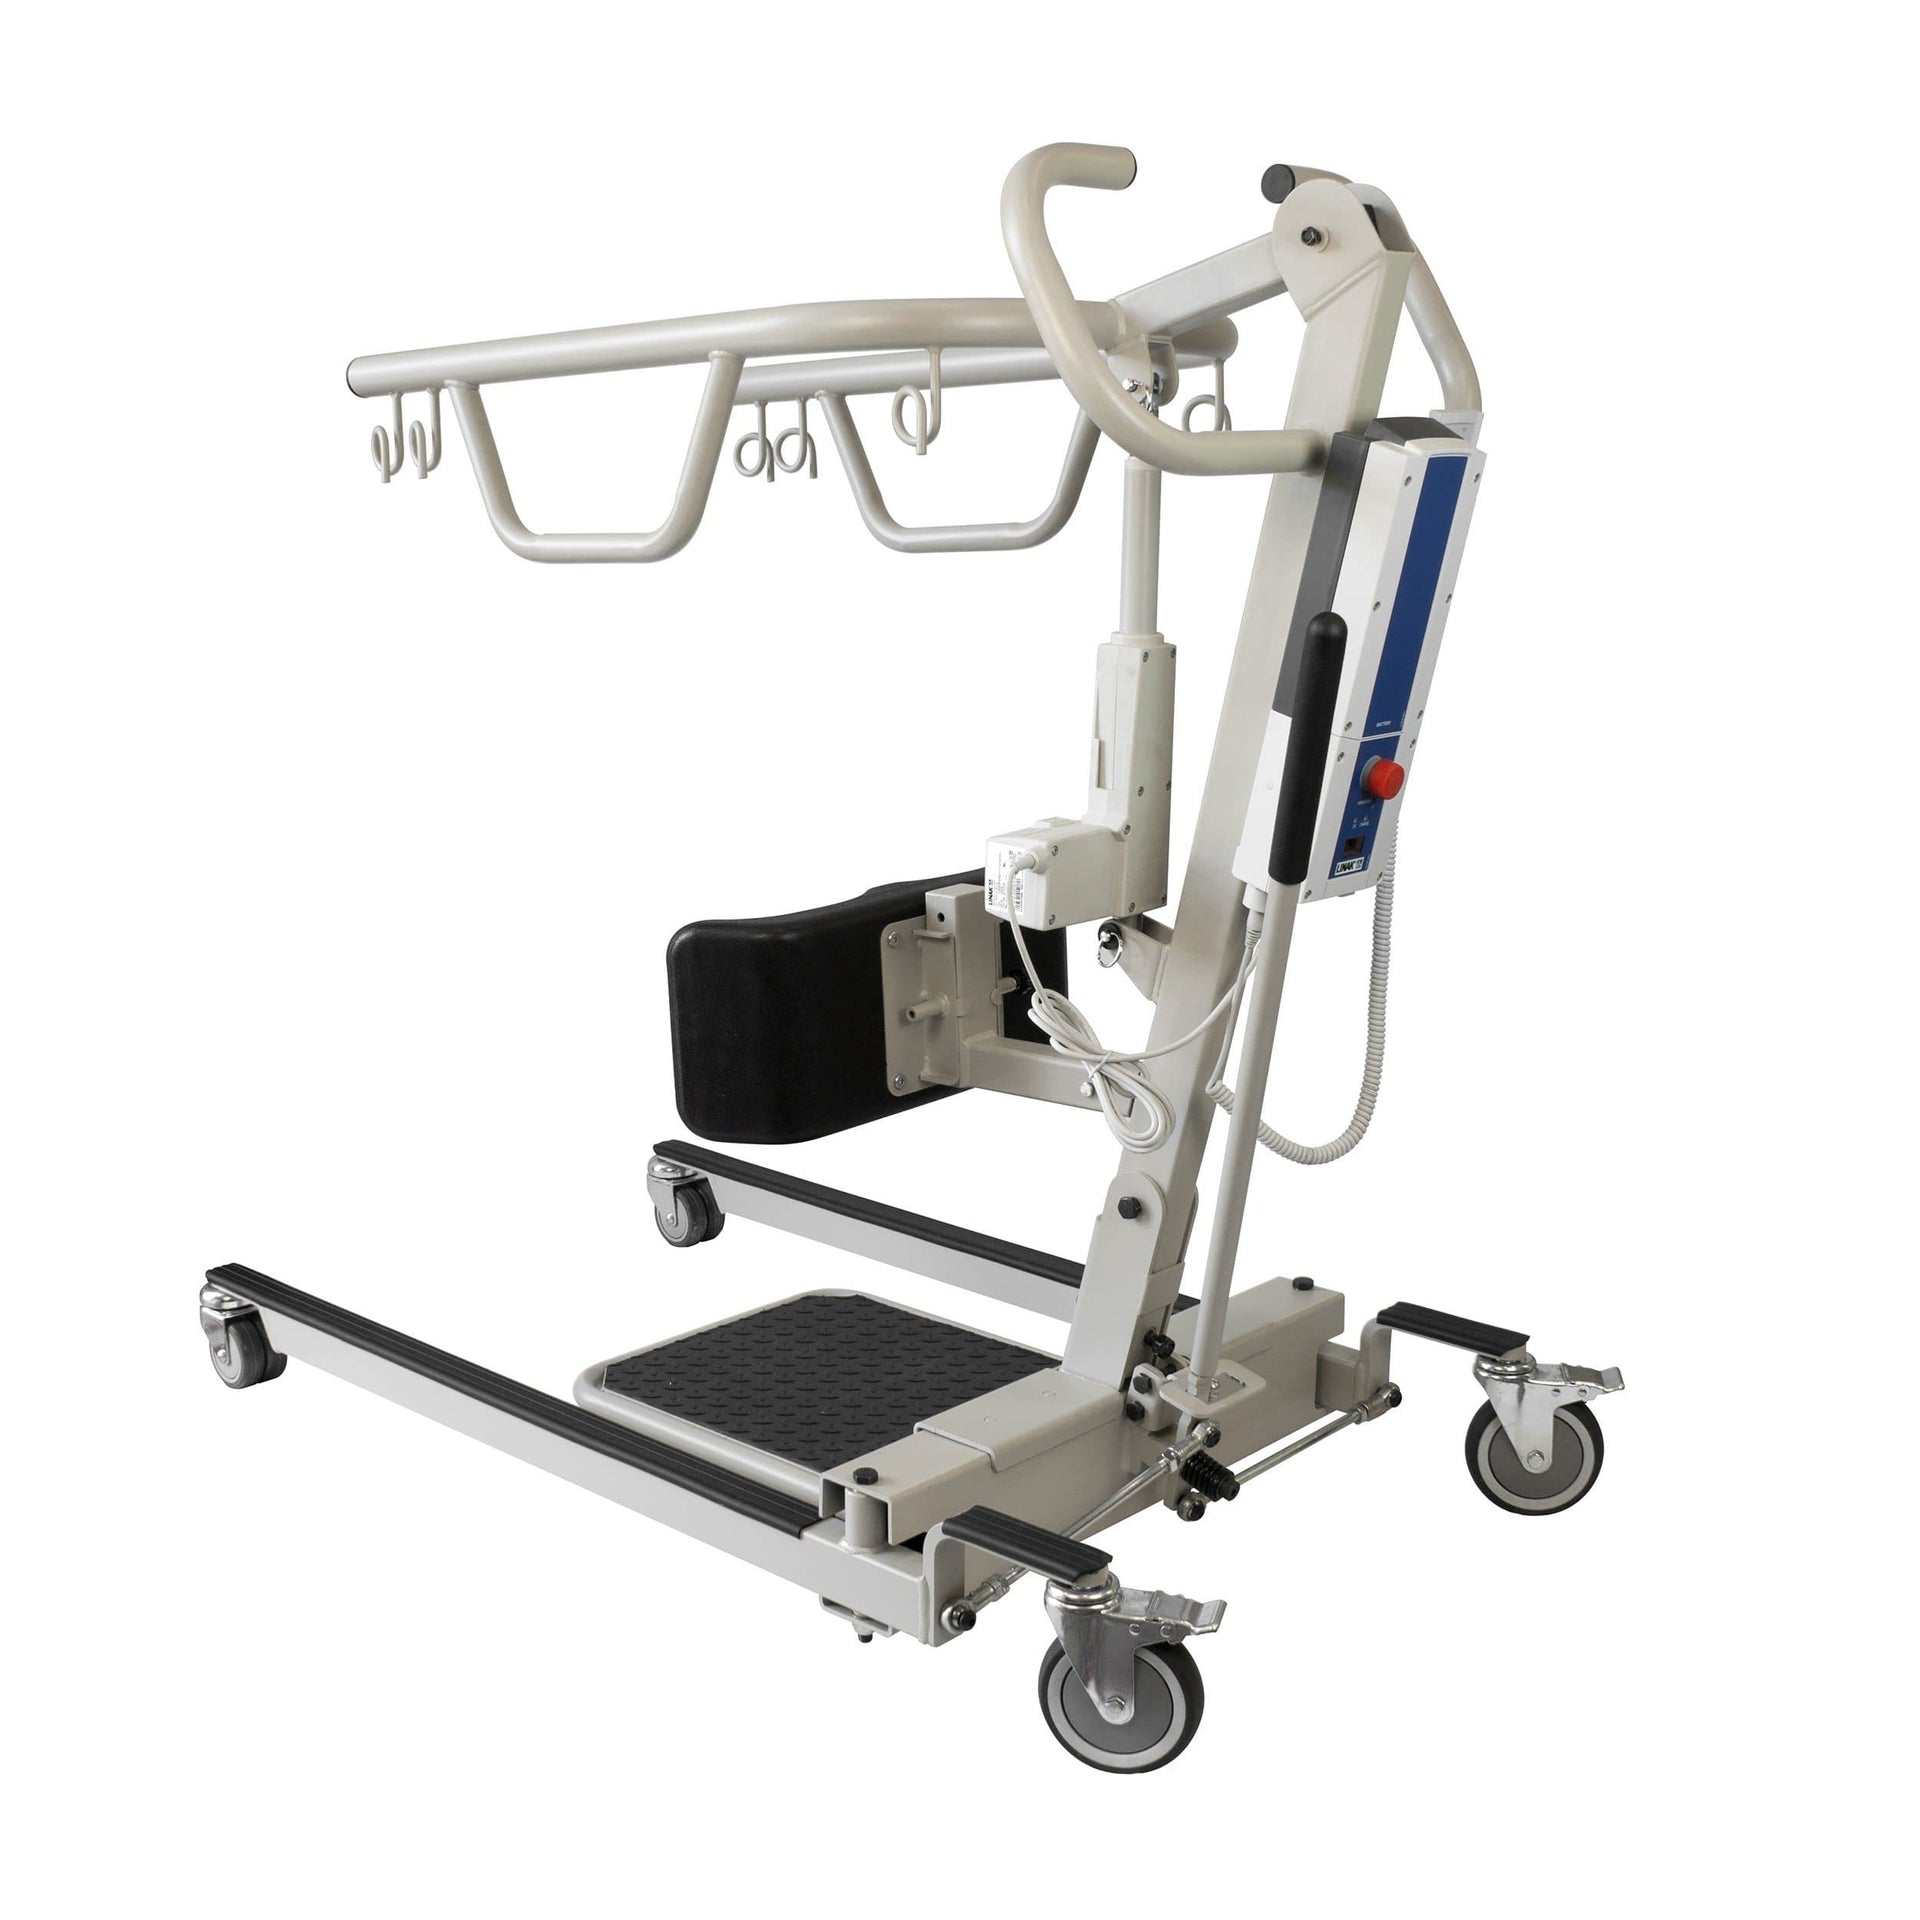 Dynarex Sit-to-Stand Electric Patient Lift - Senior.com Patient Lifts